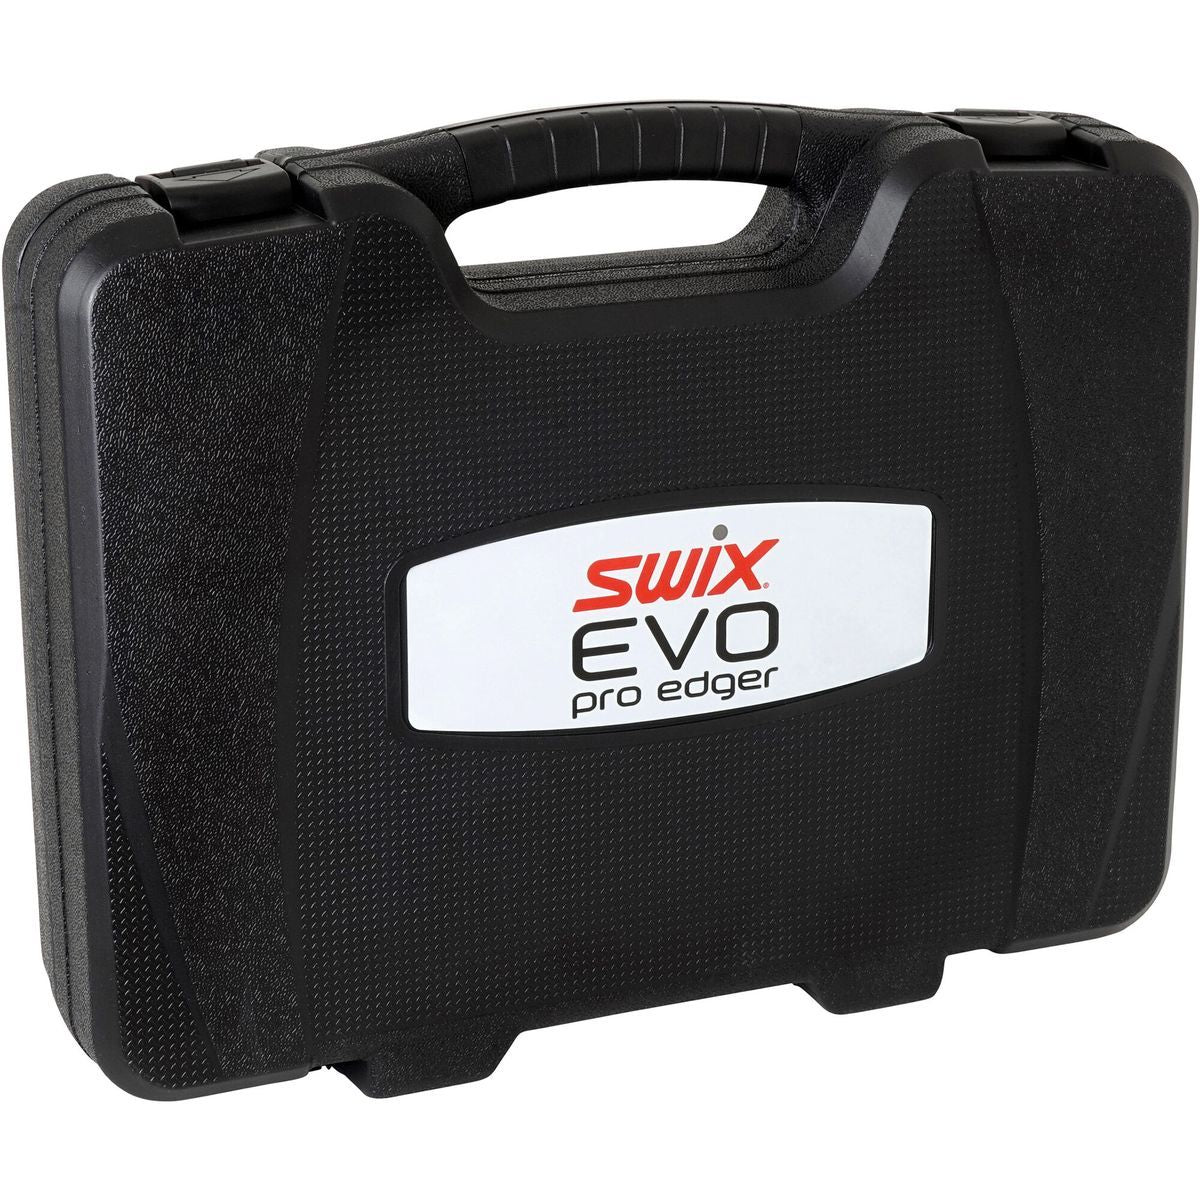 Box for Evo Pro Electrice Edge Tuner